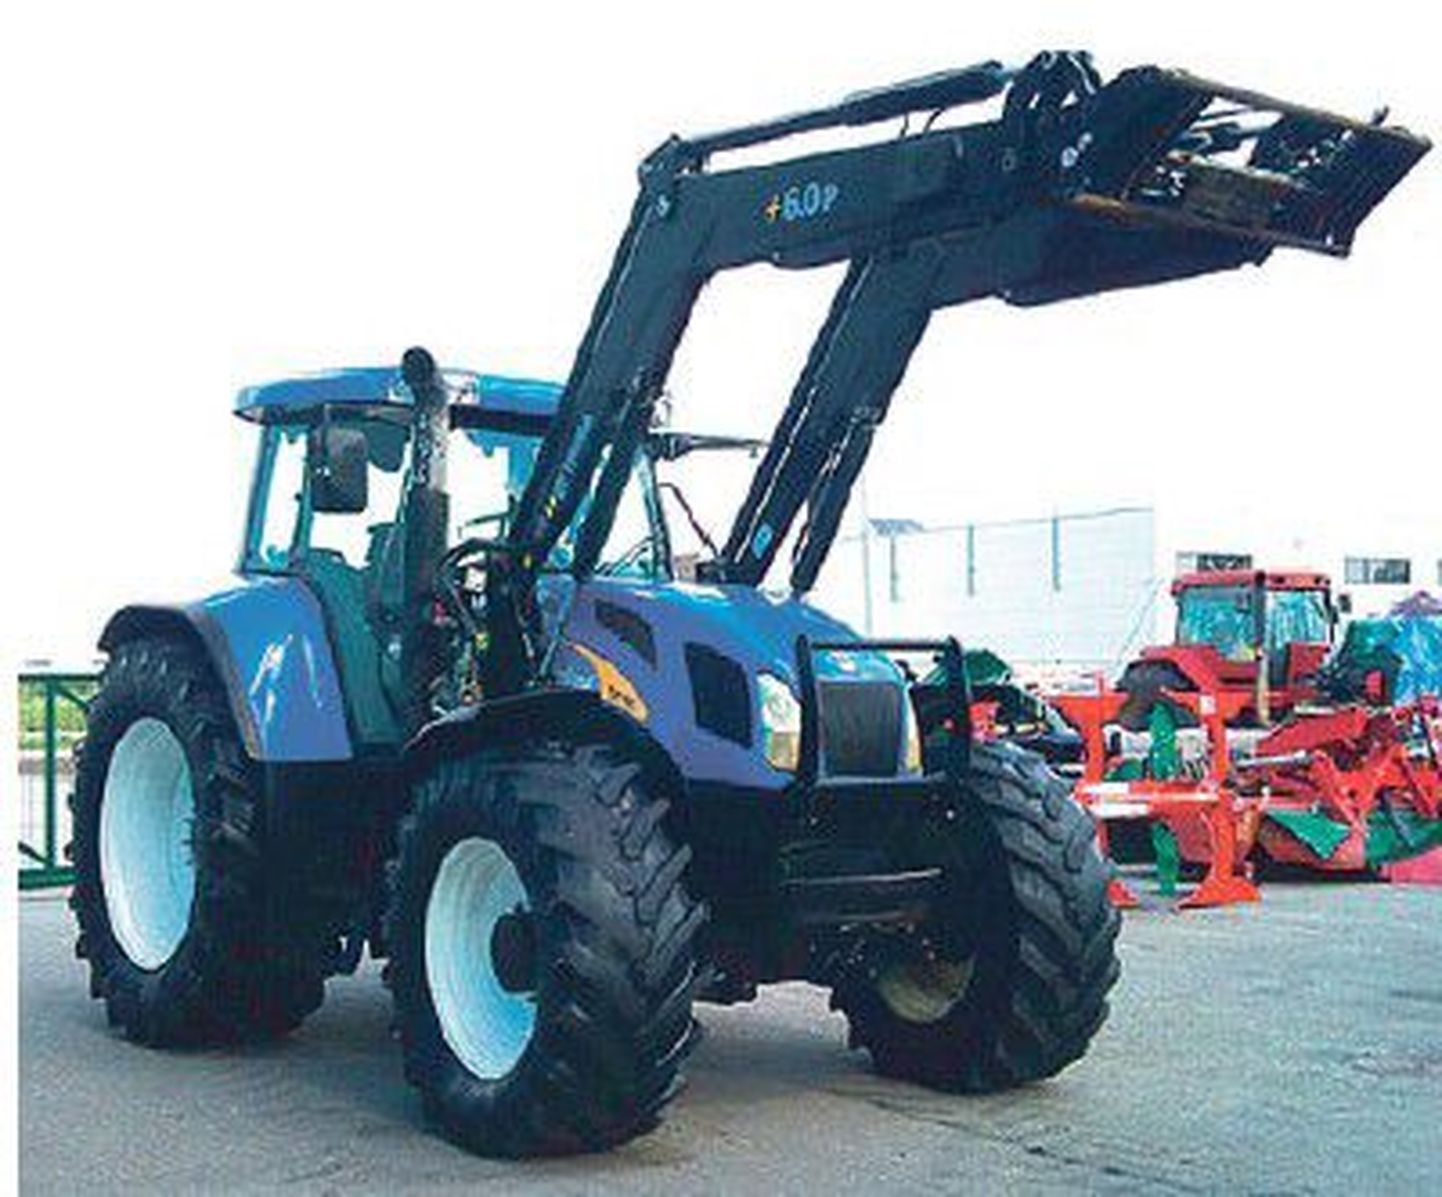 Pildil olev traktor New Holland TVT 195 on AS Dotnuvos Projektai veebiküljel müügis 49 000 euroga (hinnale lisandub käibemaks). Tegemist on 2007. aasta traktoriga, mis on läbinud 4495 töötundi.